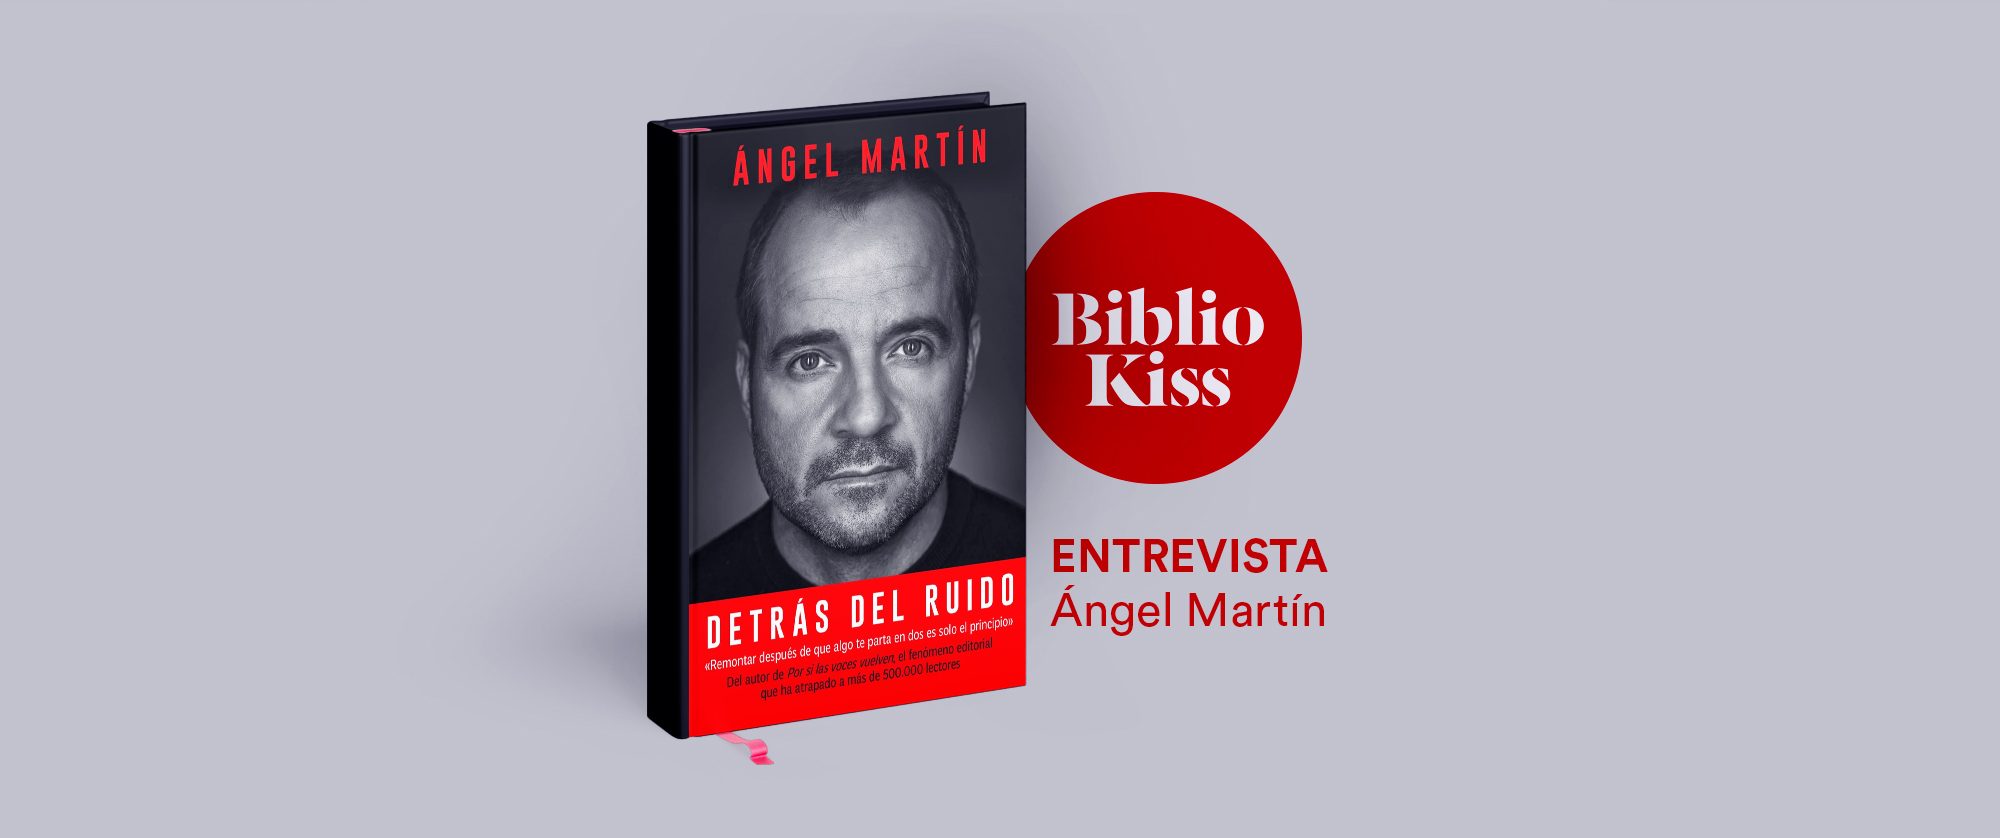 Entrevista a Ángel Martín Detrás del ruido (ed. Planeta)